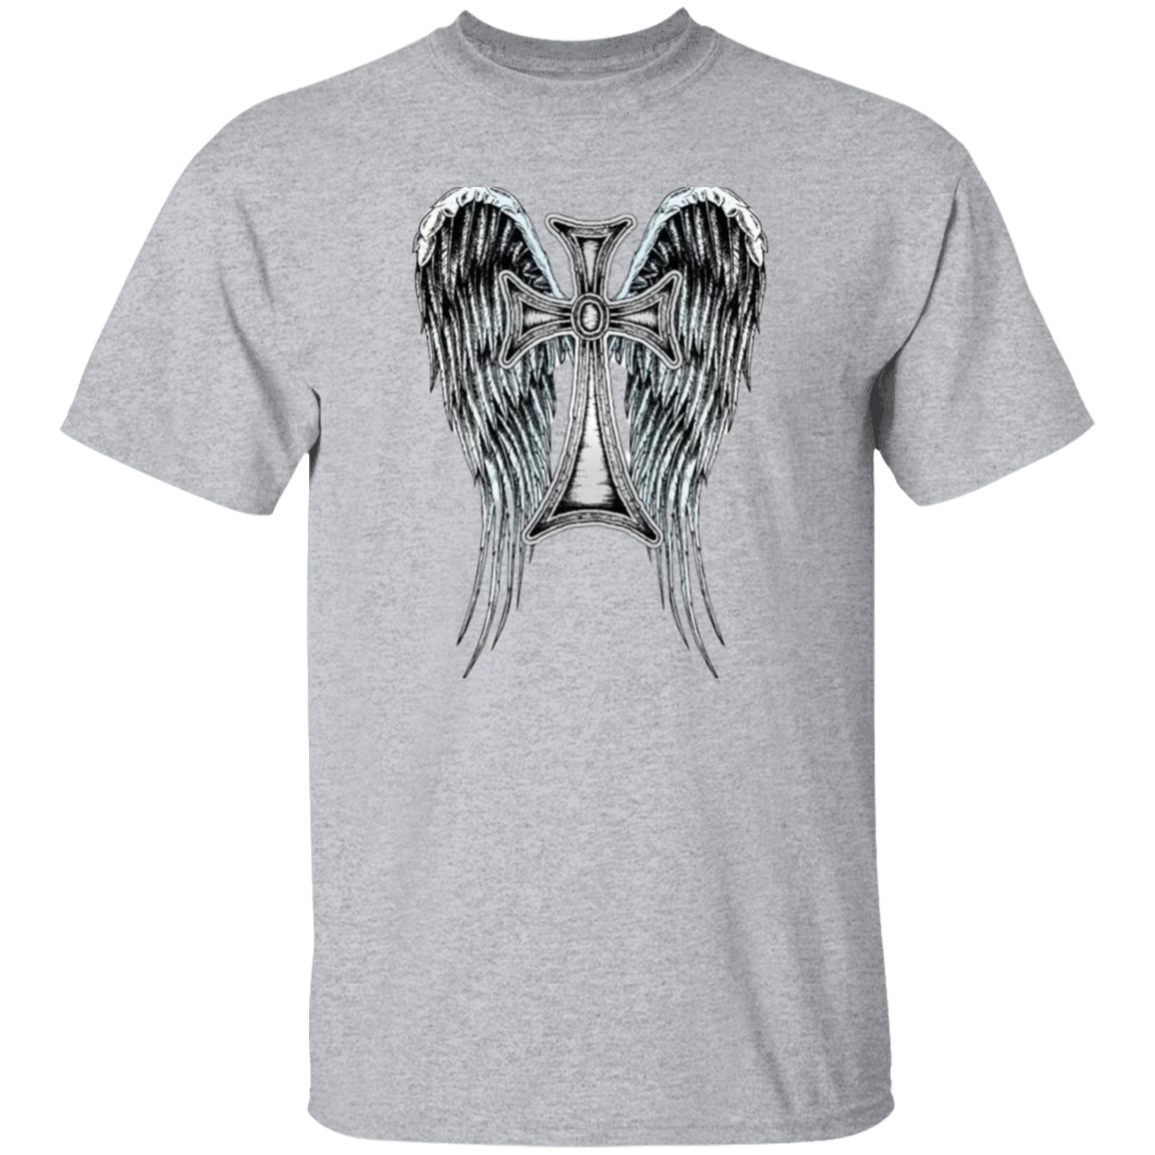 Heraldic Wing Cross oz. T-Shirt, Heraldic Wing cross Men's Jersey LS T-Shirt, Men's Short Sleeve T-Shirt,  Jesus Shirt, Men's T-Shirts